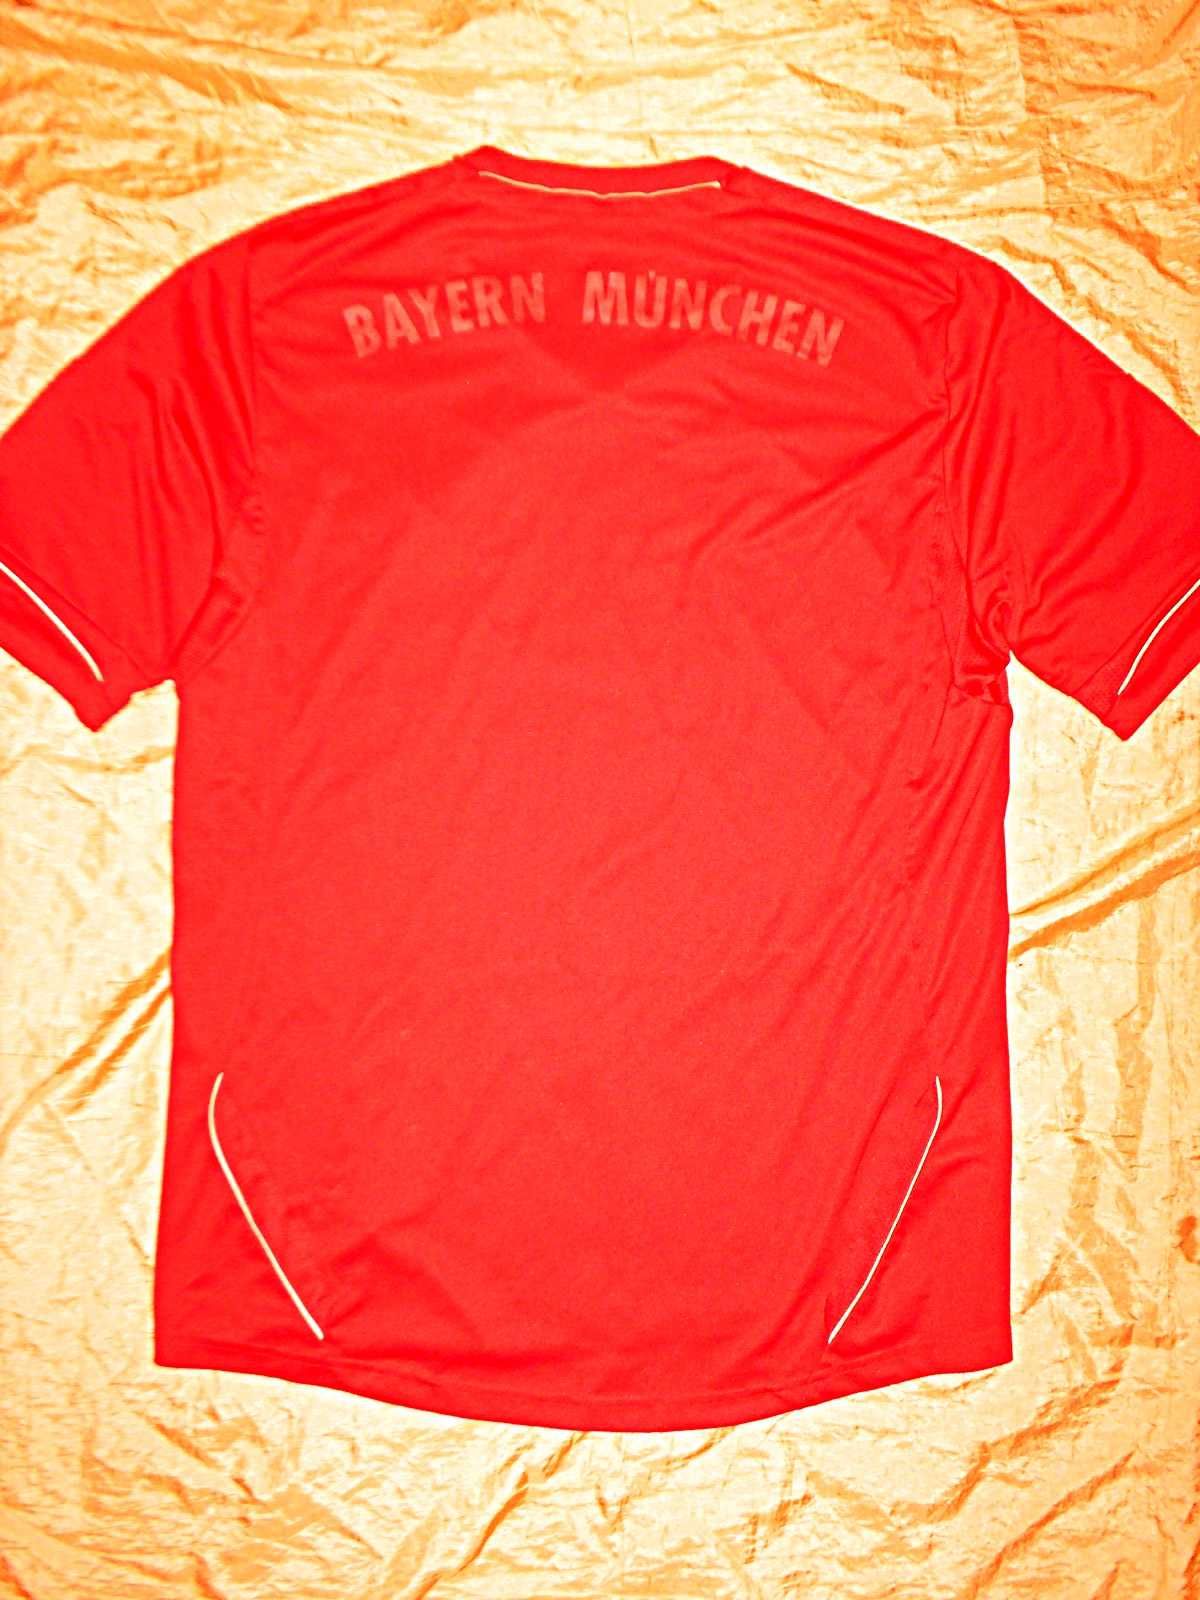 Футбольный клуб Бавария Мюнхен-футболка Adidas оригинал 2011 год